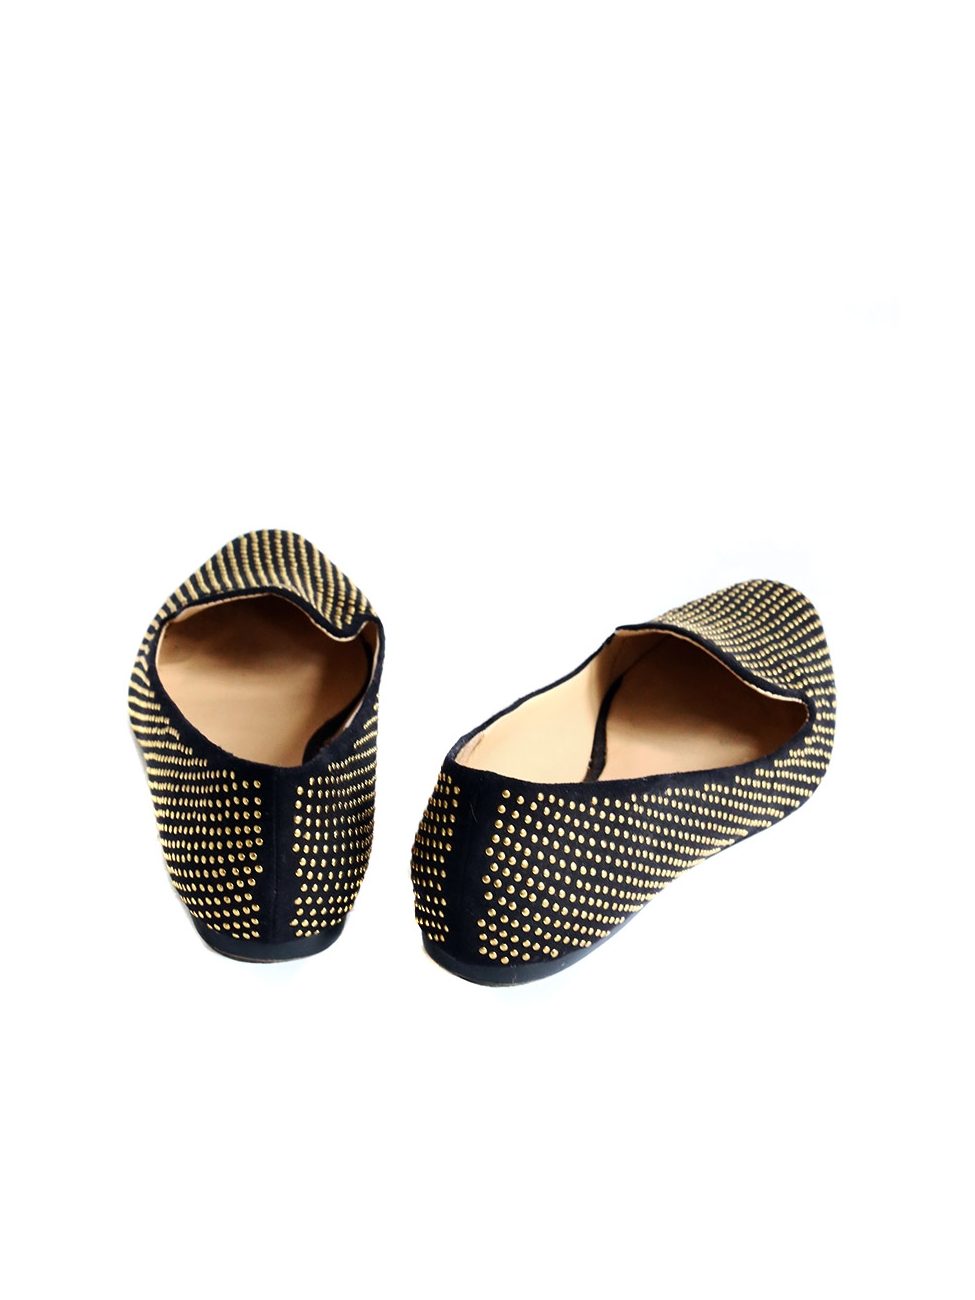 Zara Flat  Casual Shoes for Women  FASHIOLAcouk